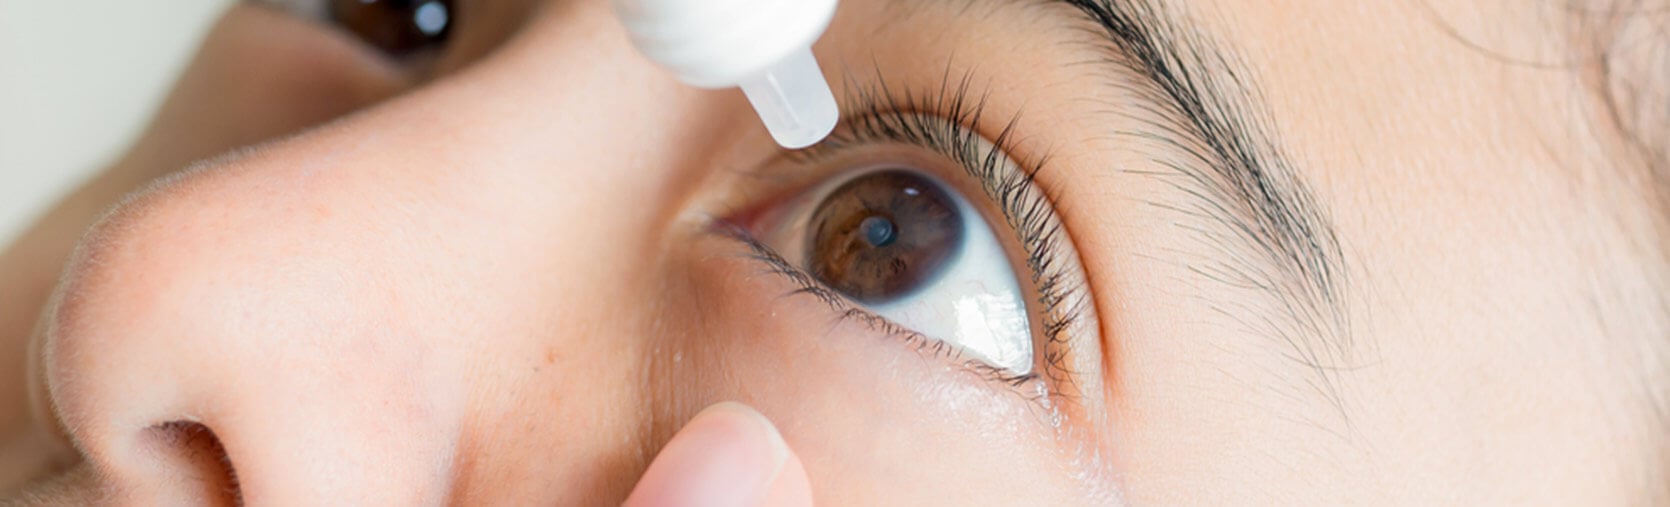 Síndrome del ojo seco: síntomas y tratamiento